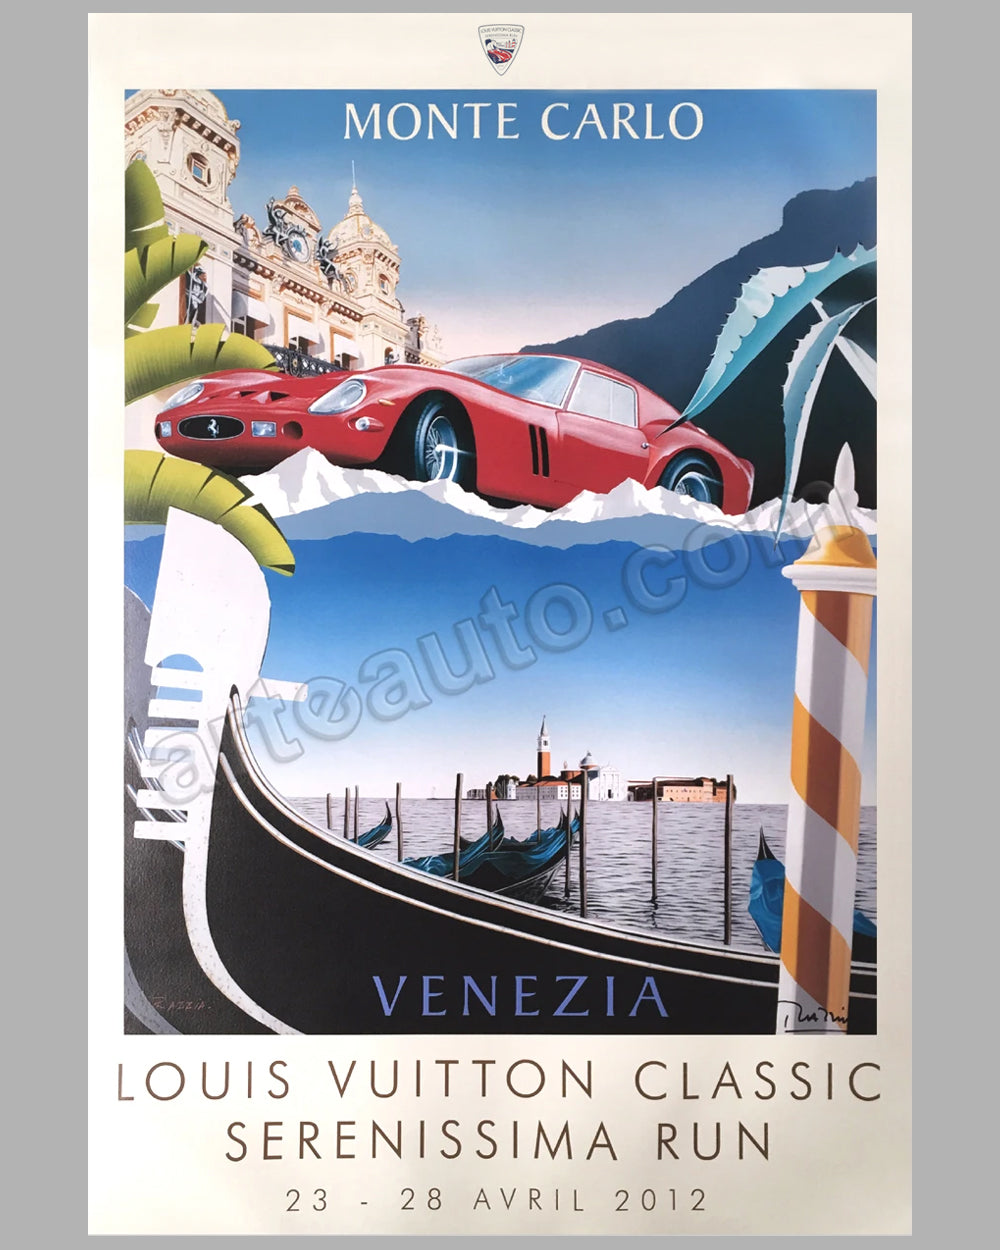 Louis Vuitton Classic Serenissima Run 2012 original poster by Razzia